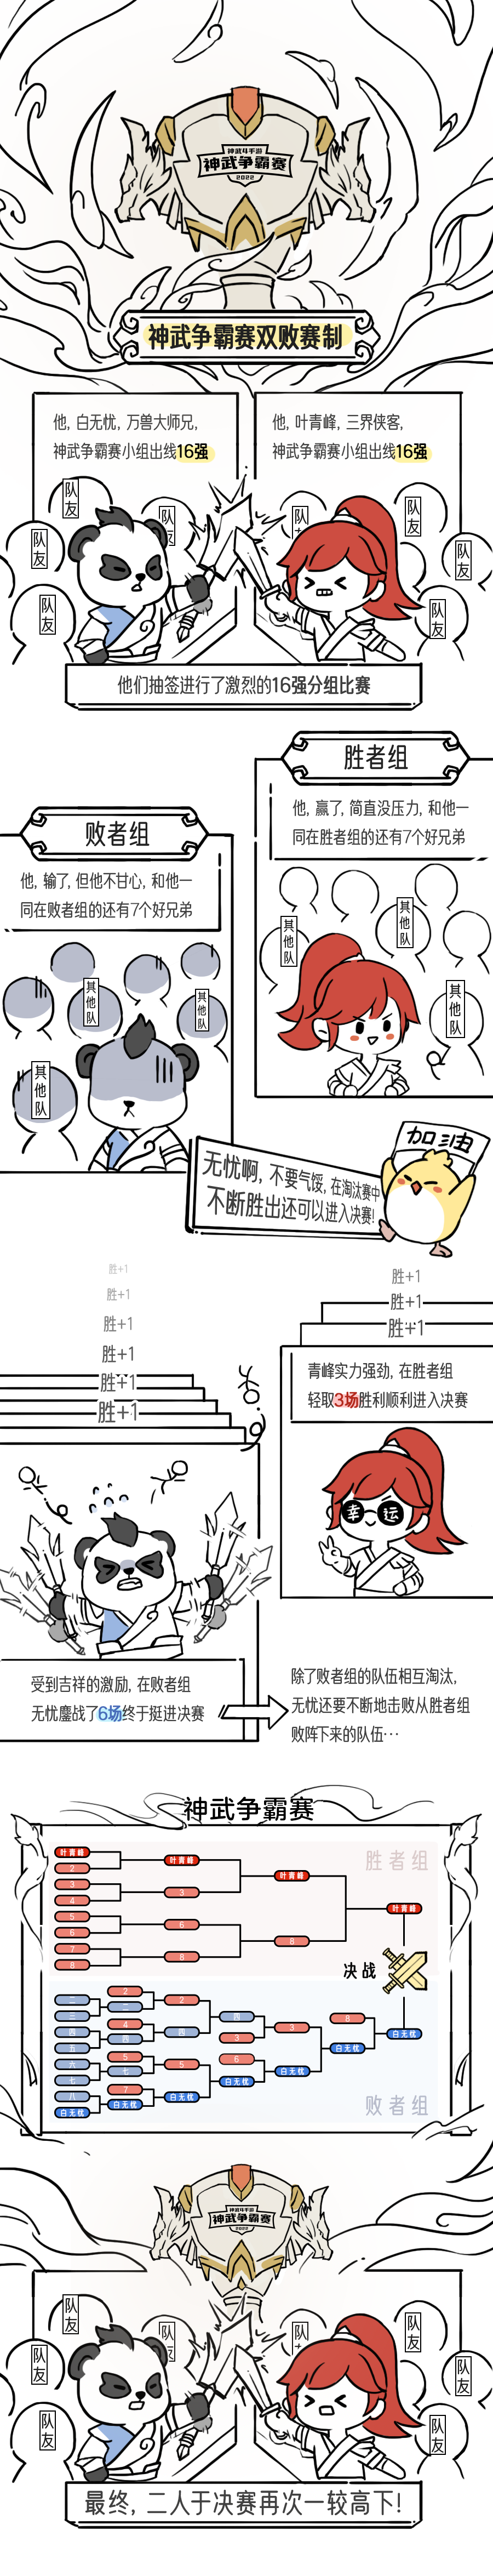 《神武4》手游神武争霸赛推出双败赛制 趣味漫画详解规则